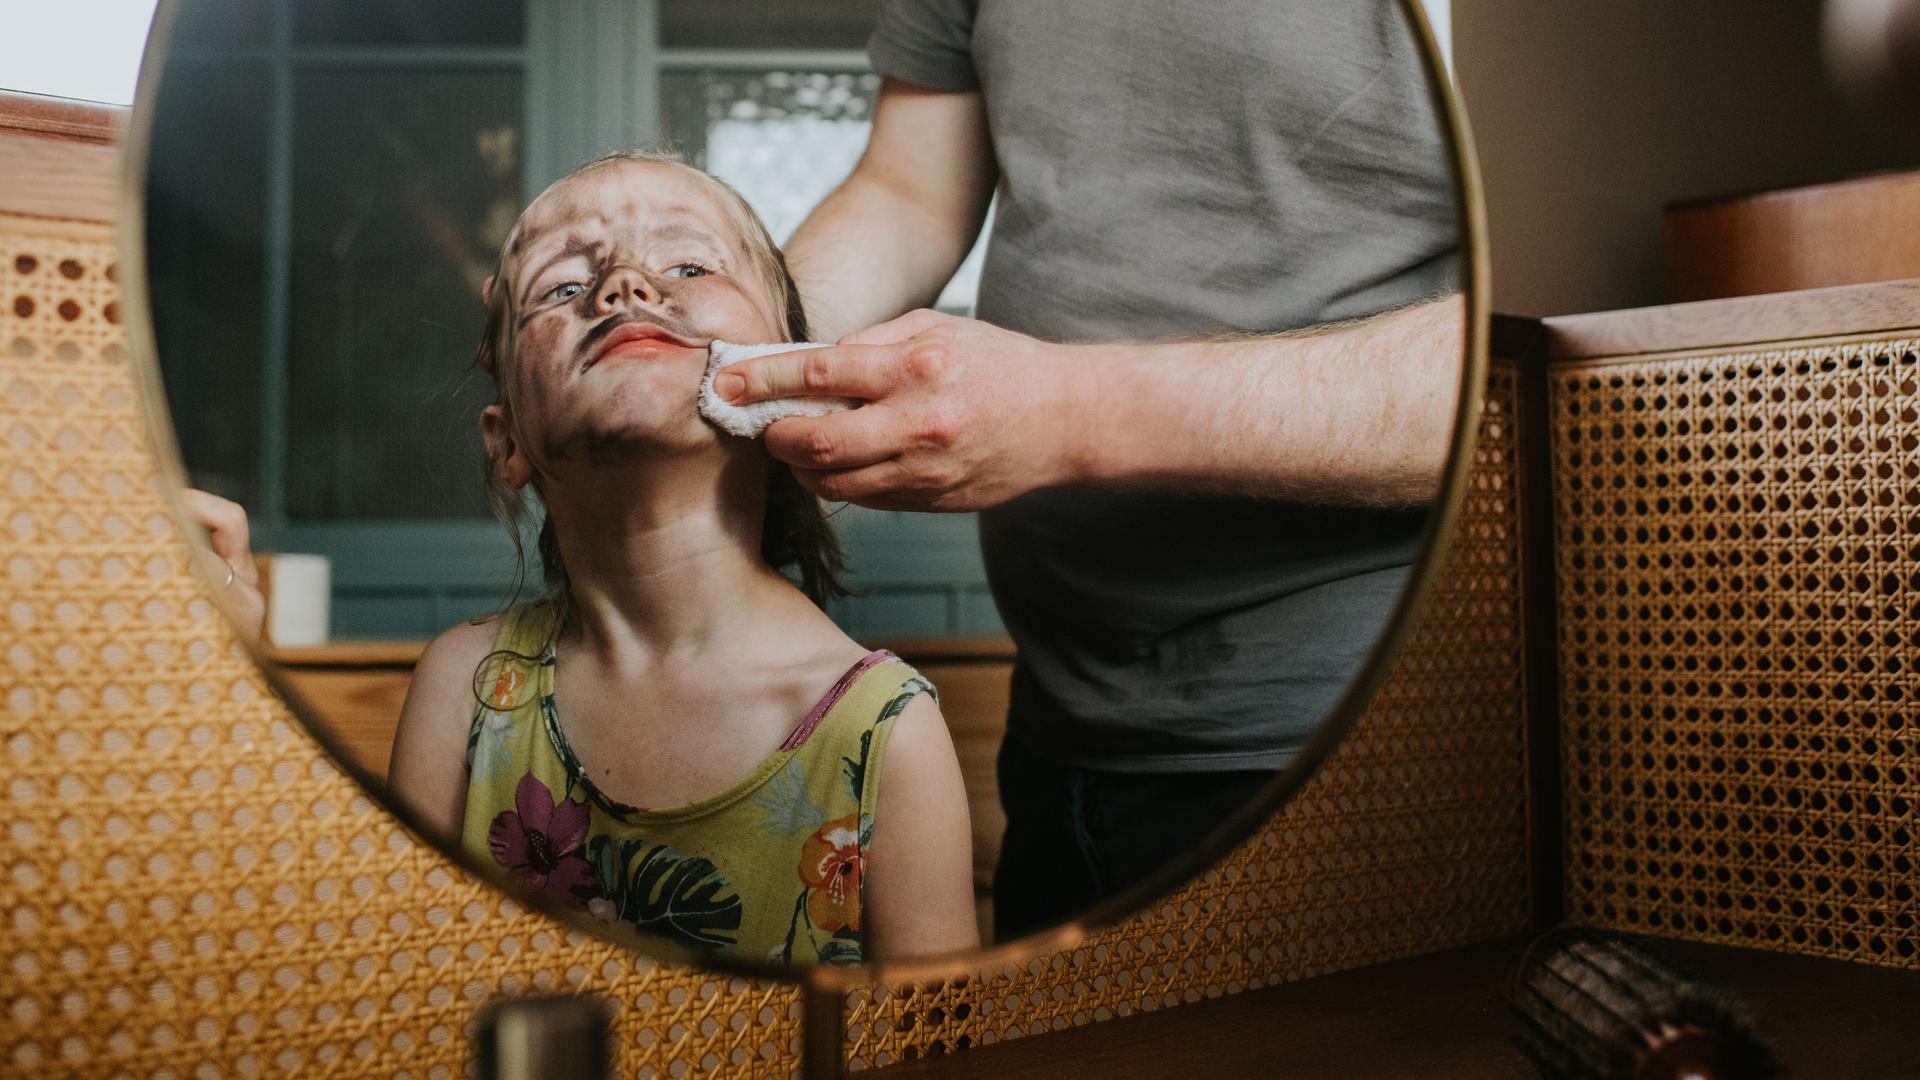 Blick in den Spiegel. Darin zu sehen ist ein Kind mit schmutzigem Gesicht und schelmischem Ausdruck. Eine Person schrubbt dem Kind mit einem Lappen das Gesicht.